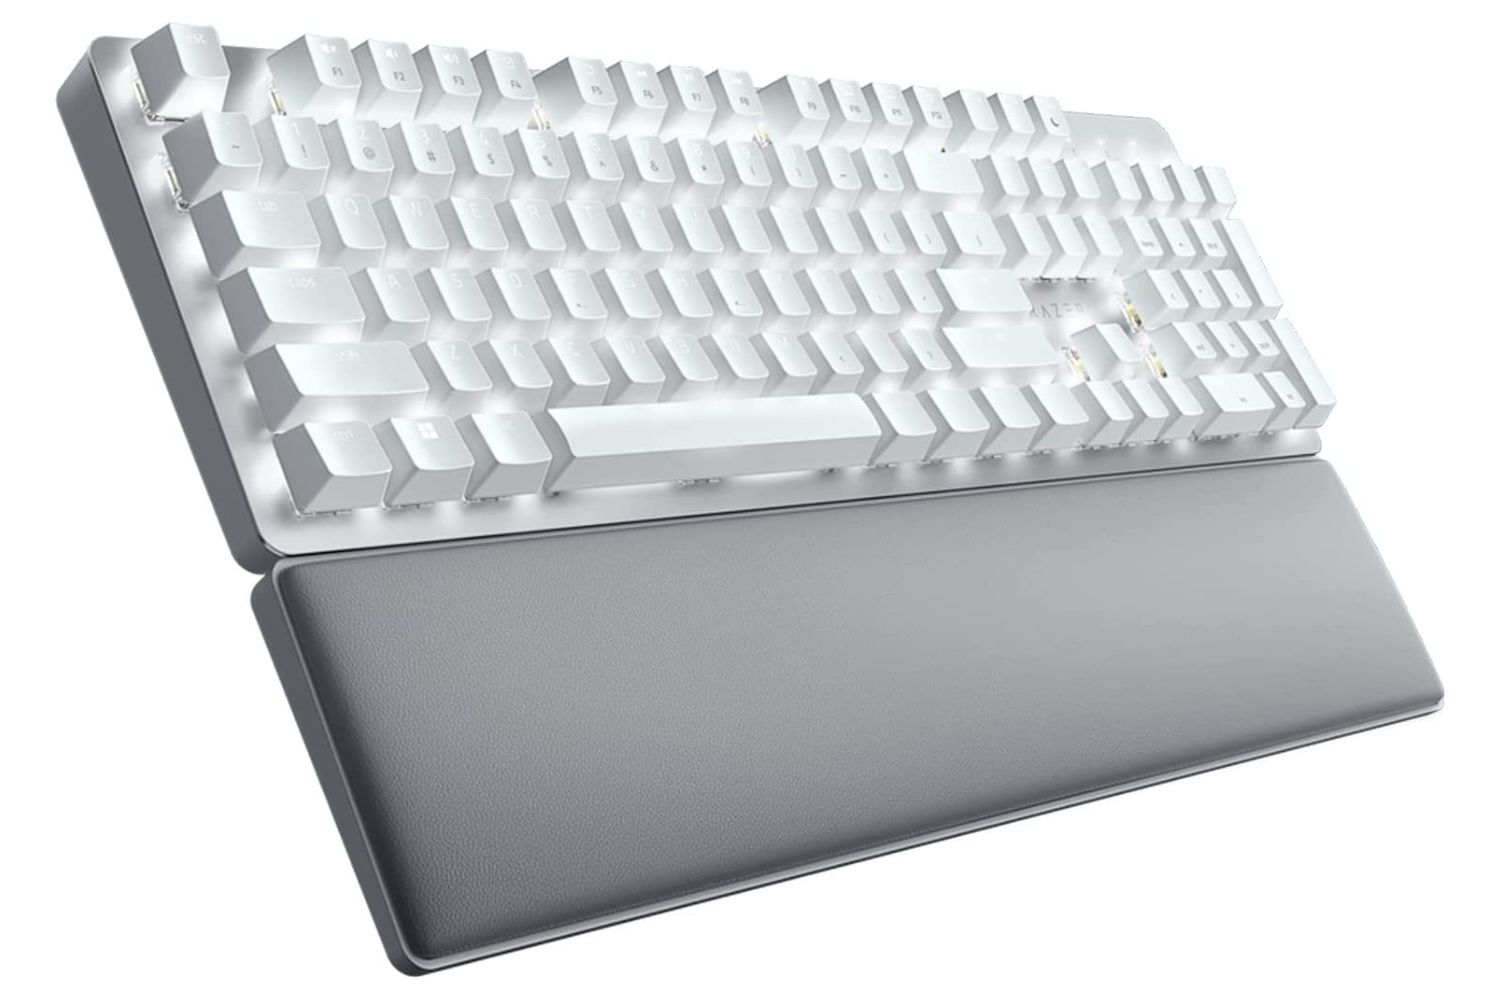 melhor teclado para escritores e digitação razer pro type ultra